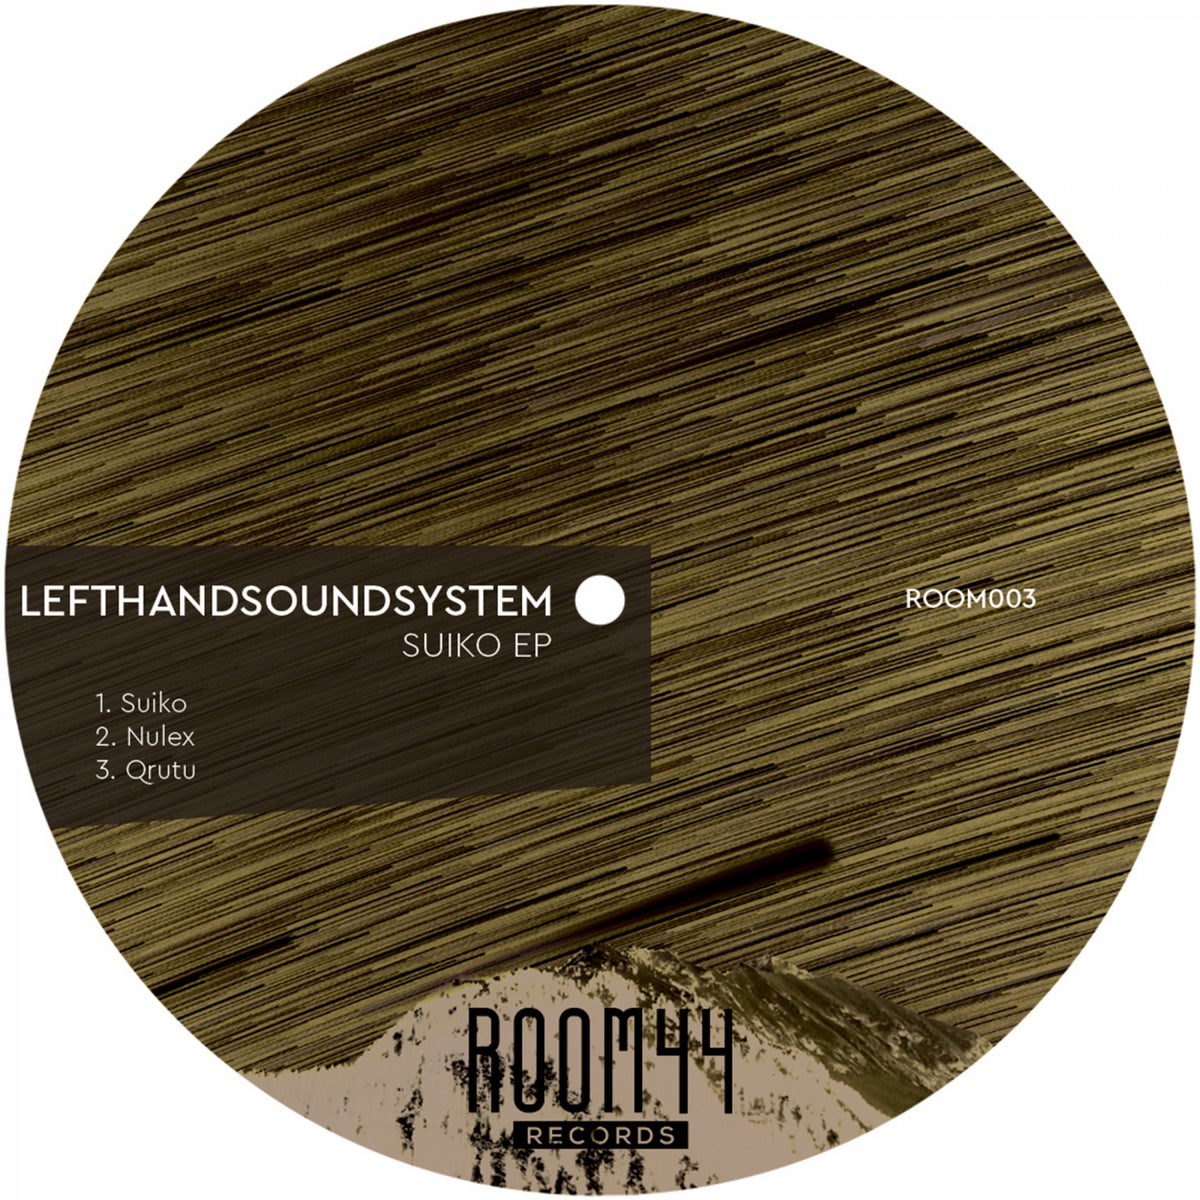 lefthandsoundsystem - Suiko EP [ROOM003]